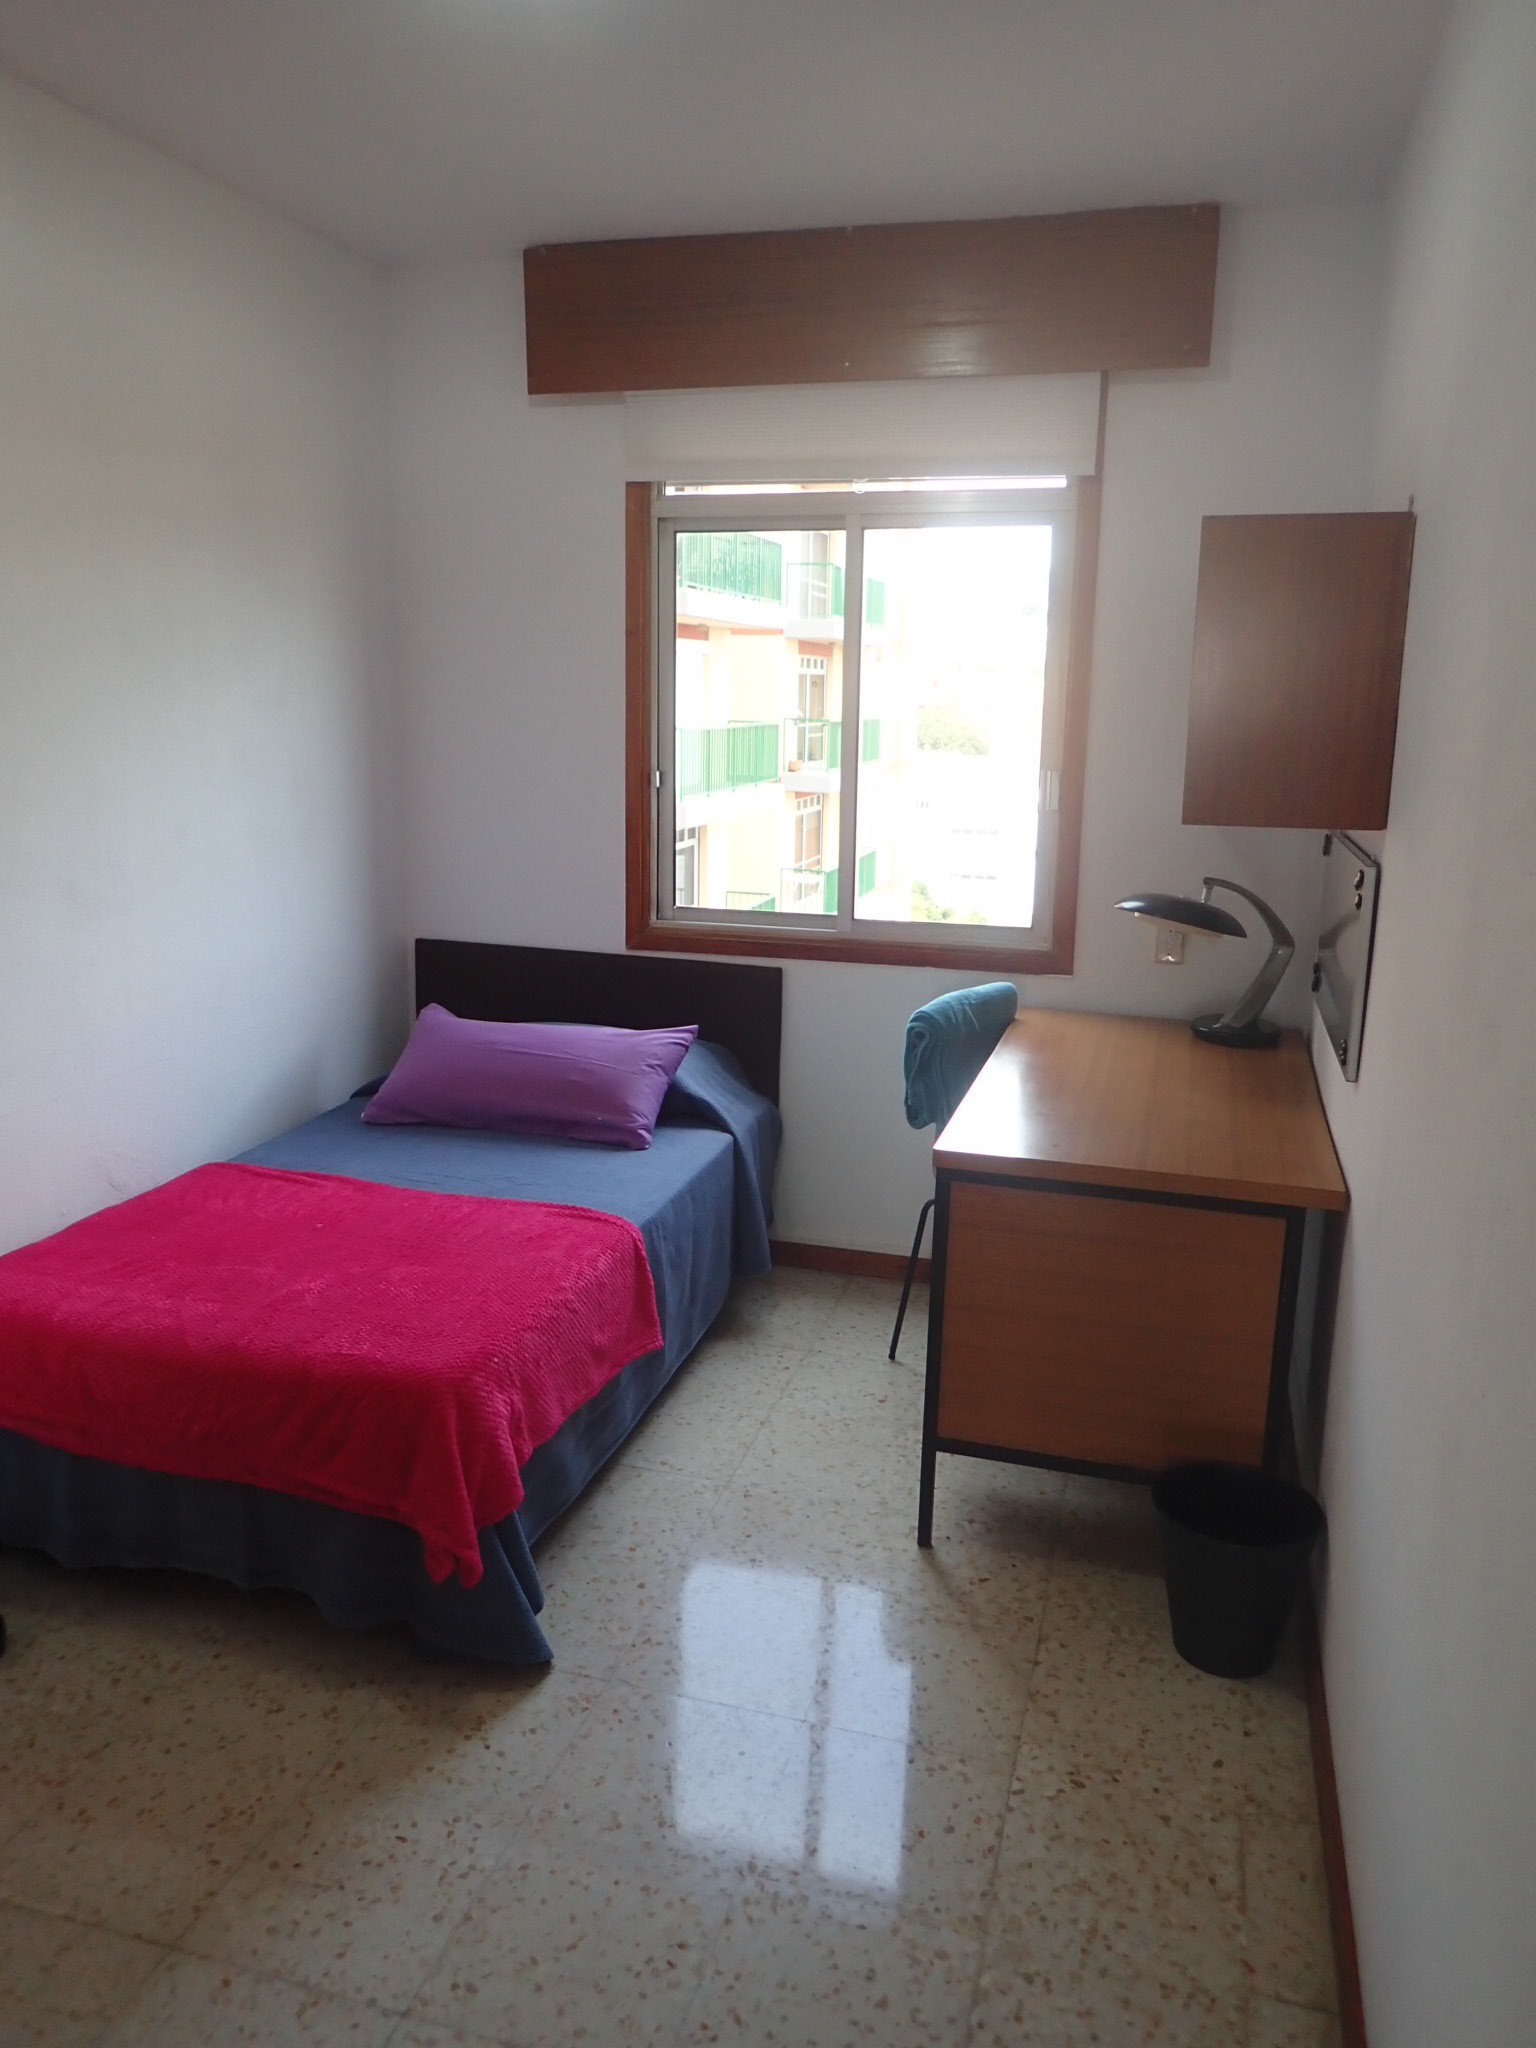 Room For Rent In 4 Bedroom Apartment In Santa Cruz De Tenerife